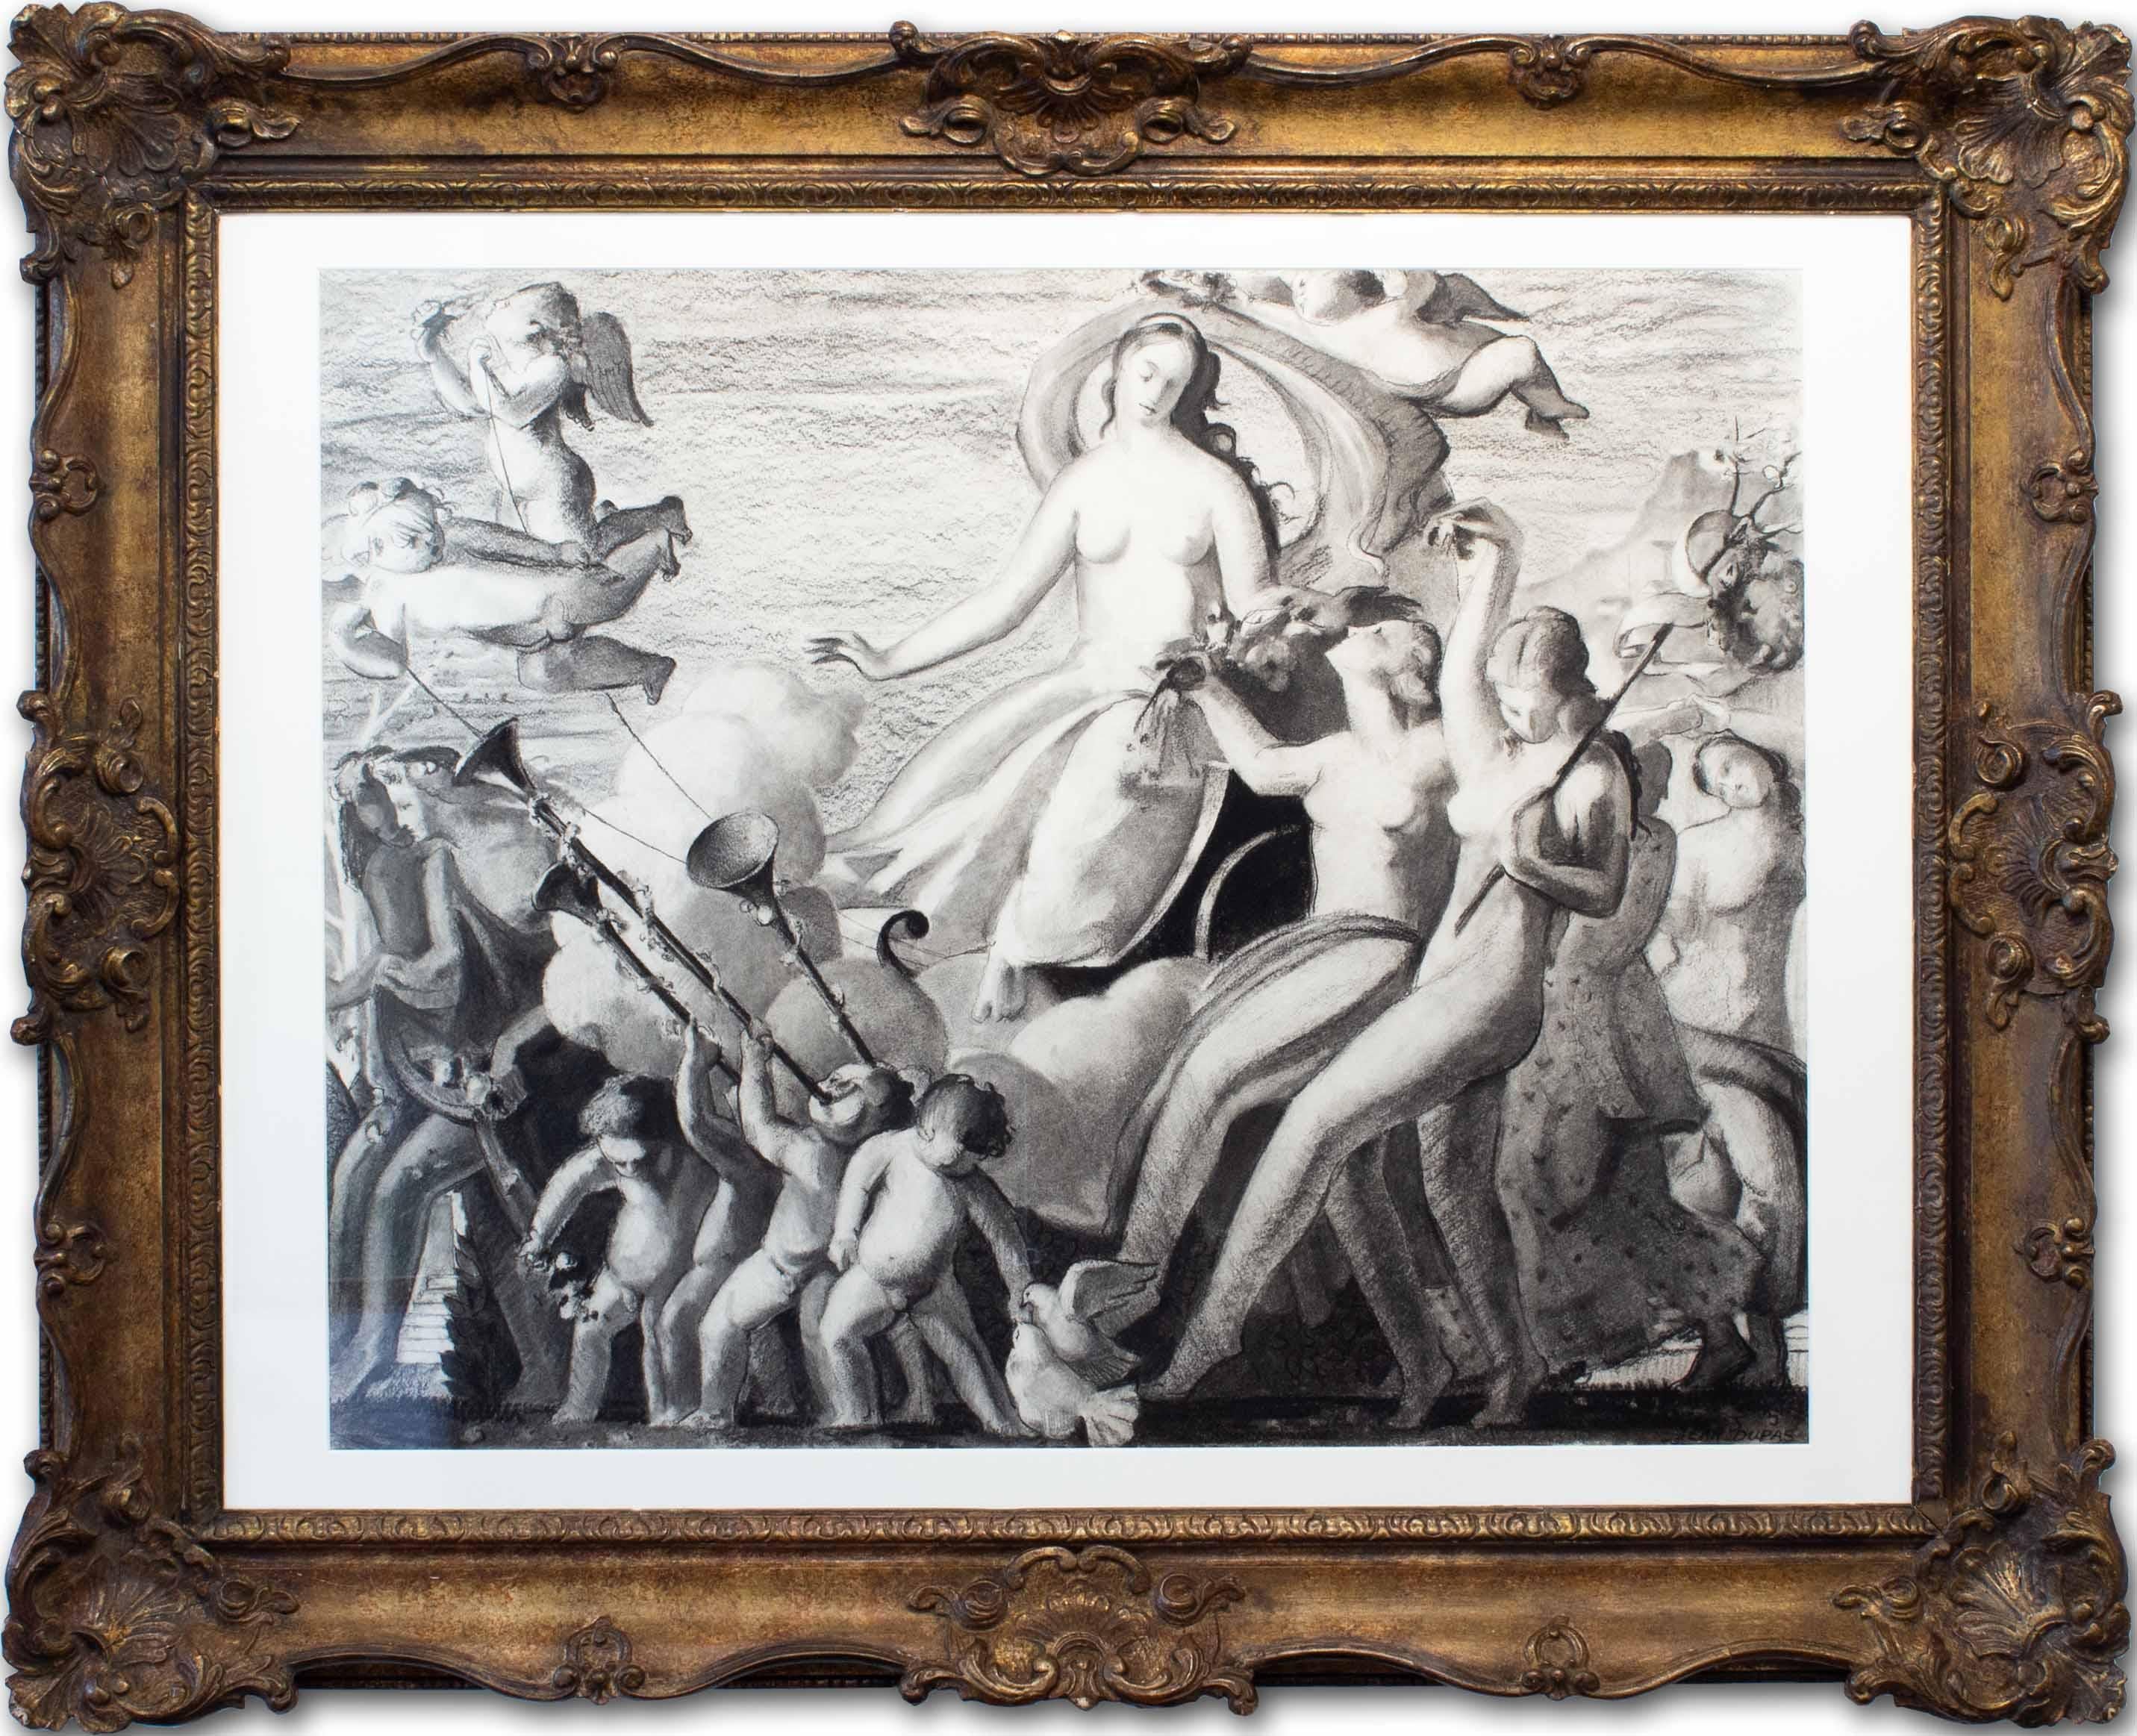 Jean Dupas (Französisch, 1882-1964)
Der Triumph der Venus
Holzkohle auf Papier
unterzeichnet und datiert '33/JEAN DUPAS'. 
(unten rechts) 
25 x 31.1/8 in. (63.5 x 79 cm.)

Dupas wurde in Bordeaux geboren. Im Jahr 1910 gewann er den Prix de Rome.